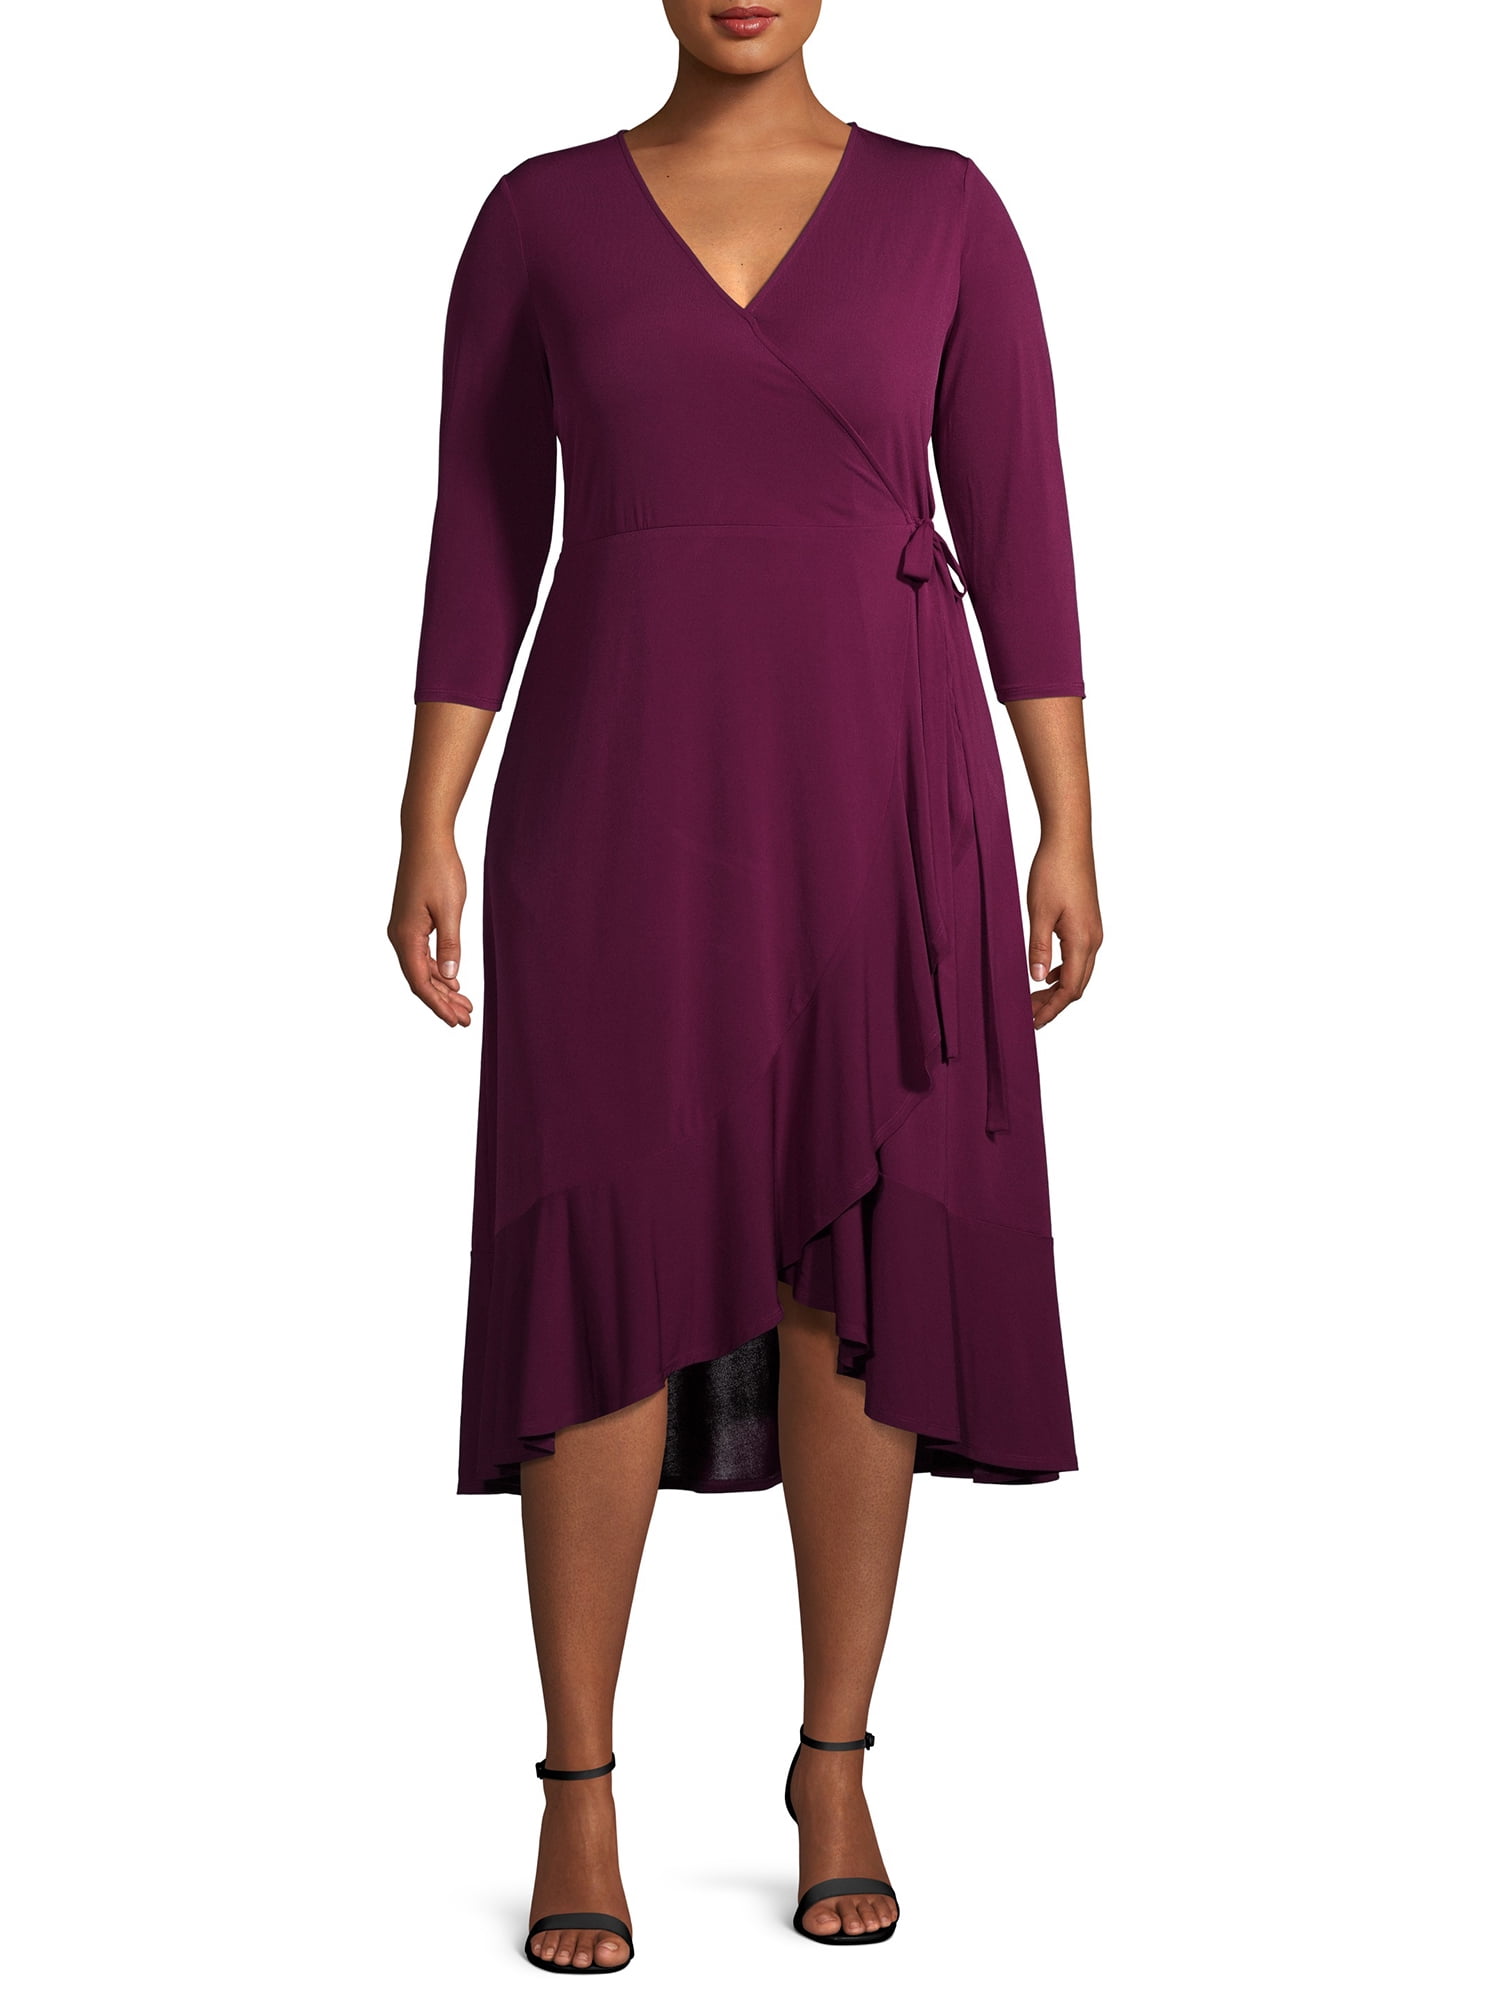 Terra & Sky Wrap Dress - Walmart.com